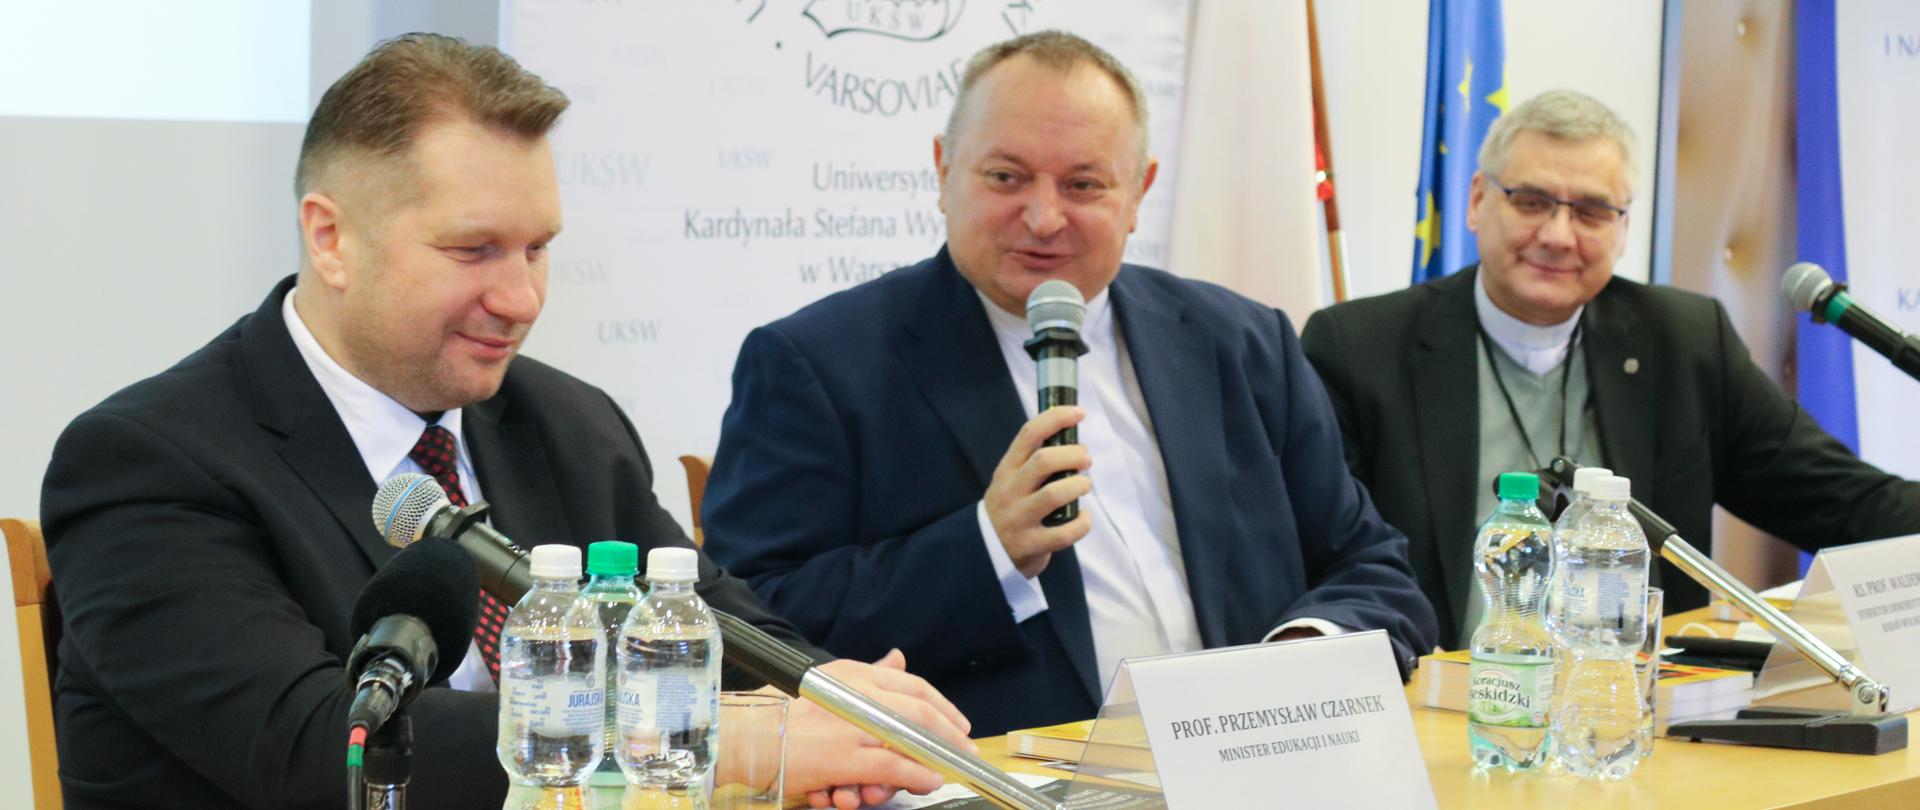 Minister Przemysław Czarnek siedzi przy stole podczas konferencji, przed sobą ma mikrofony, obok niego siedzą przedstawiciele UKSW w Warszawie.